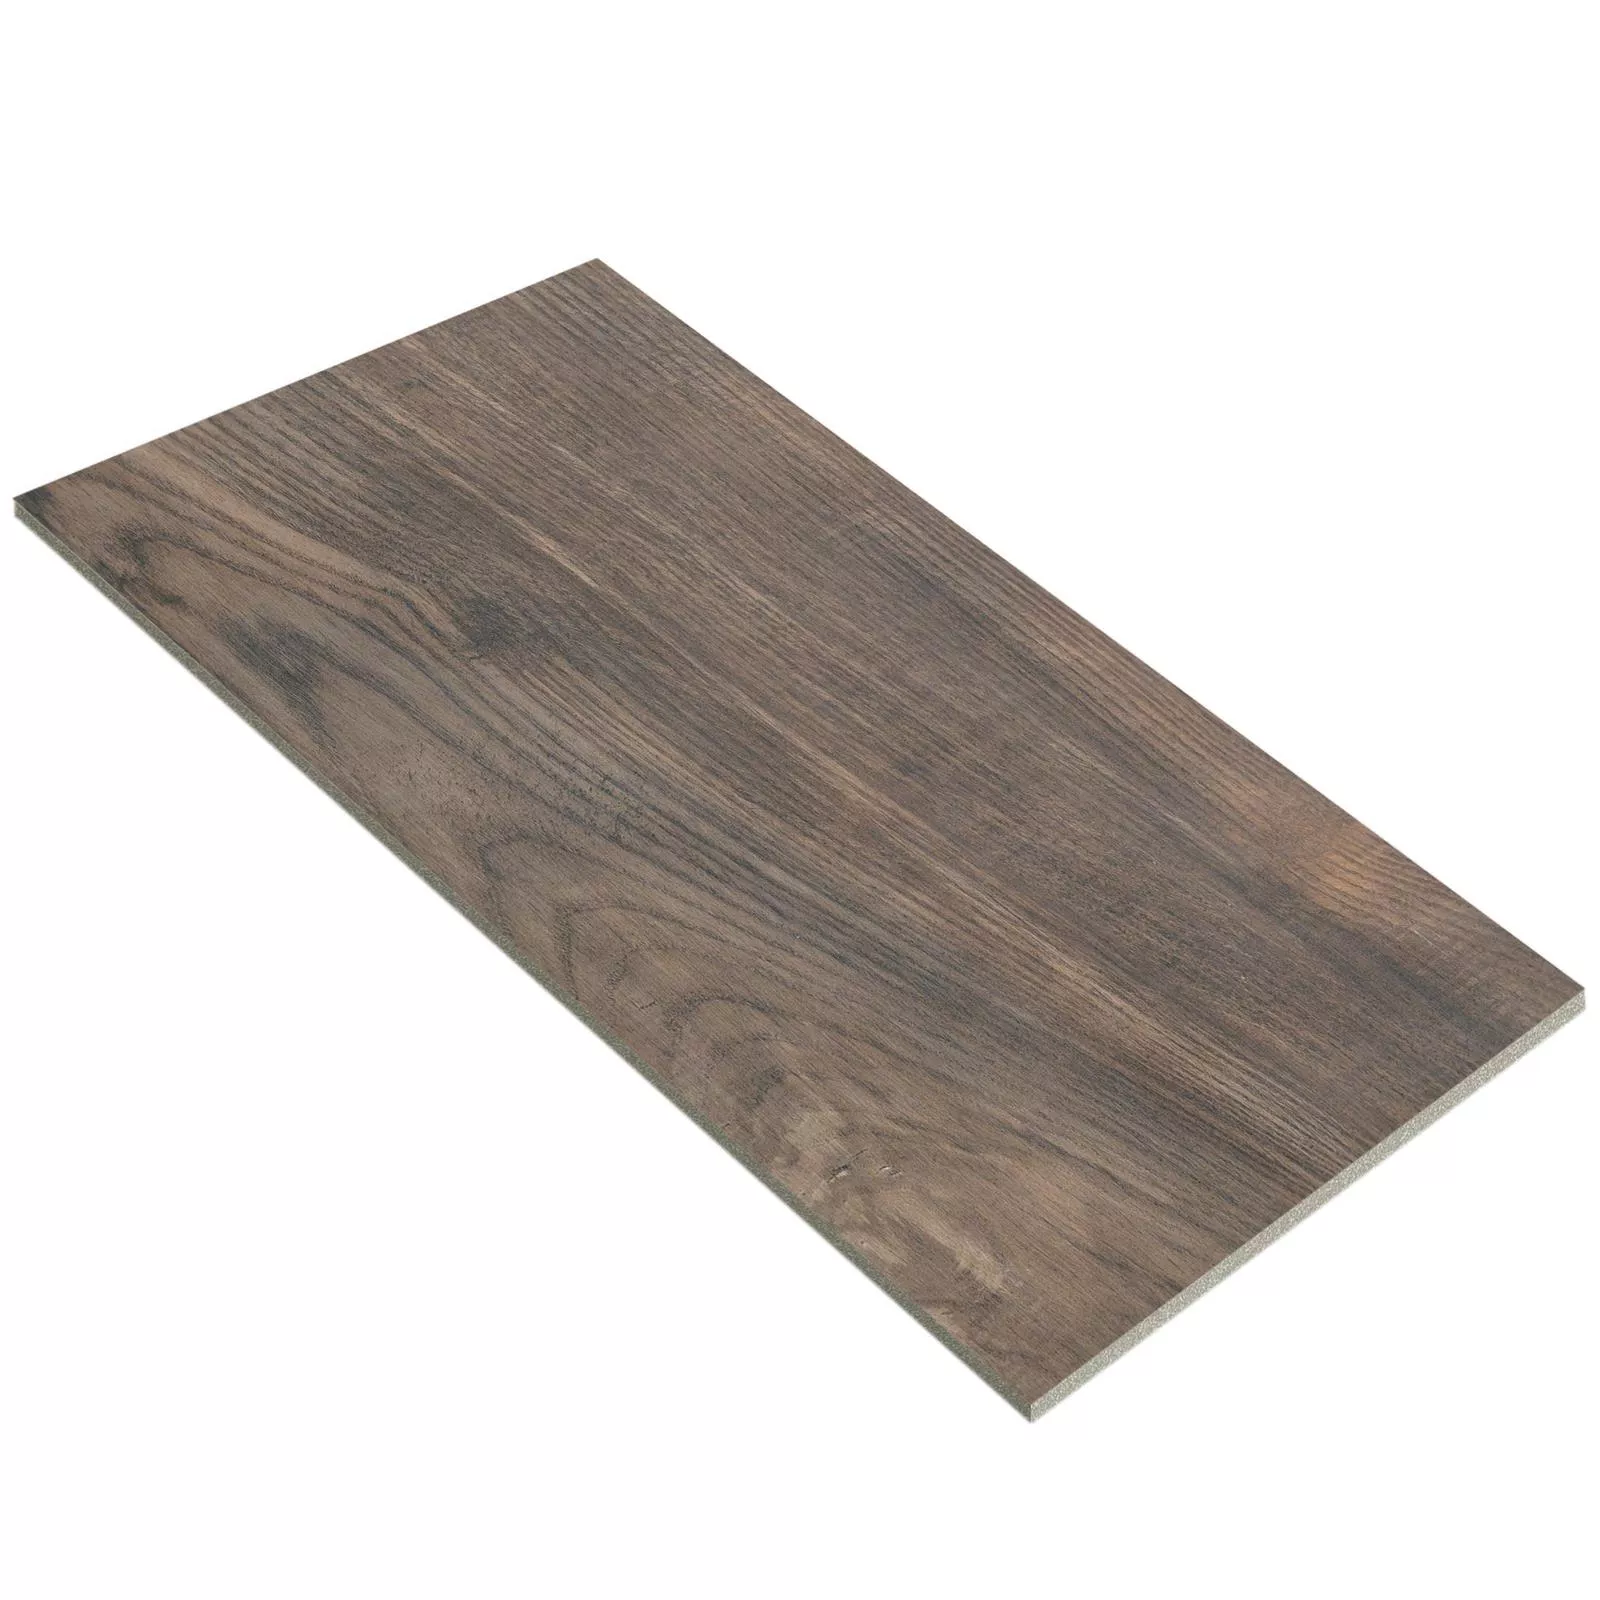 Sample Floor Tiles Wood Optic Nikopol 30x60cm Brown